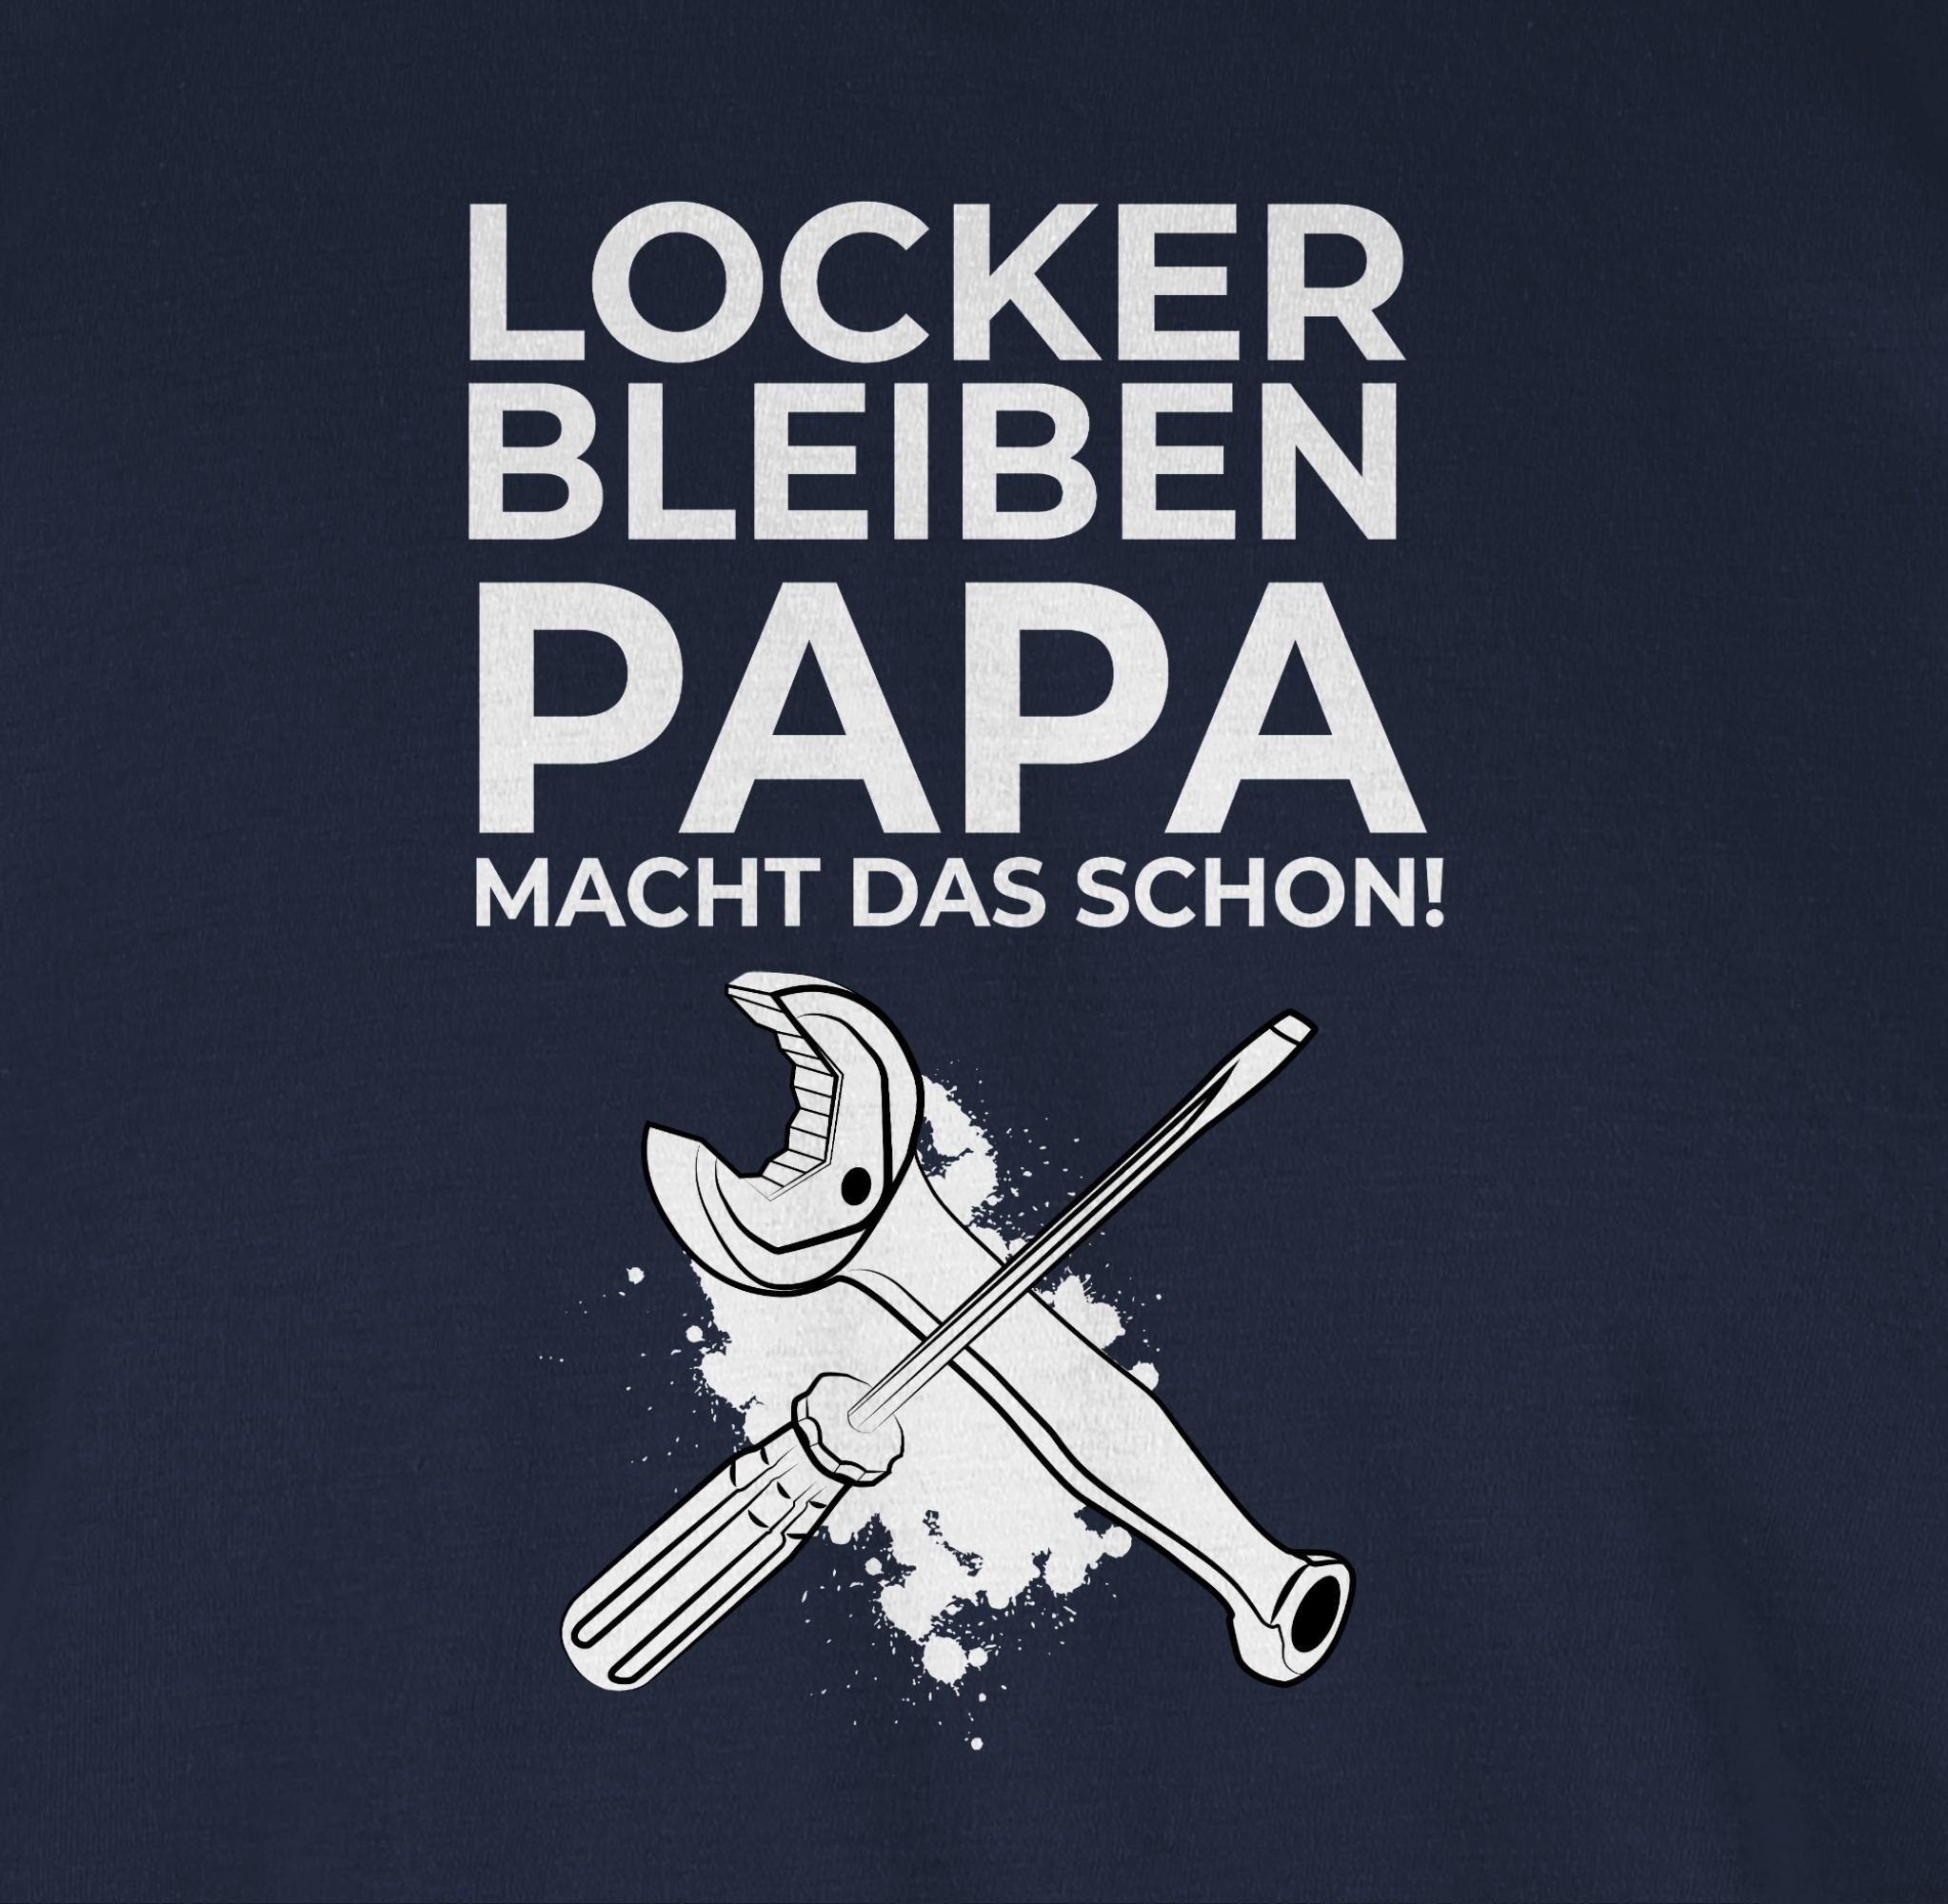 Shirtracer T-Shirt Locker bleiben Werkzeug Navy macht Geschenke Papa 2 das Handwerker schon Blau